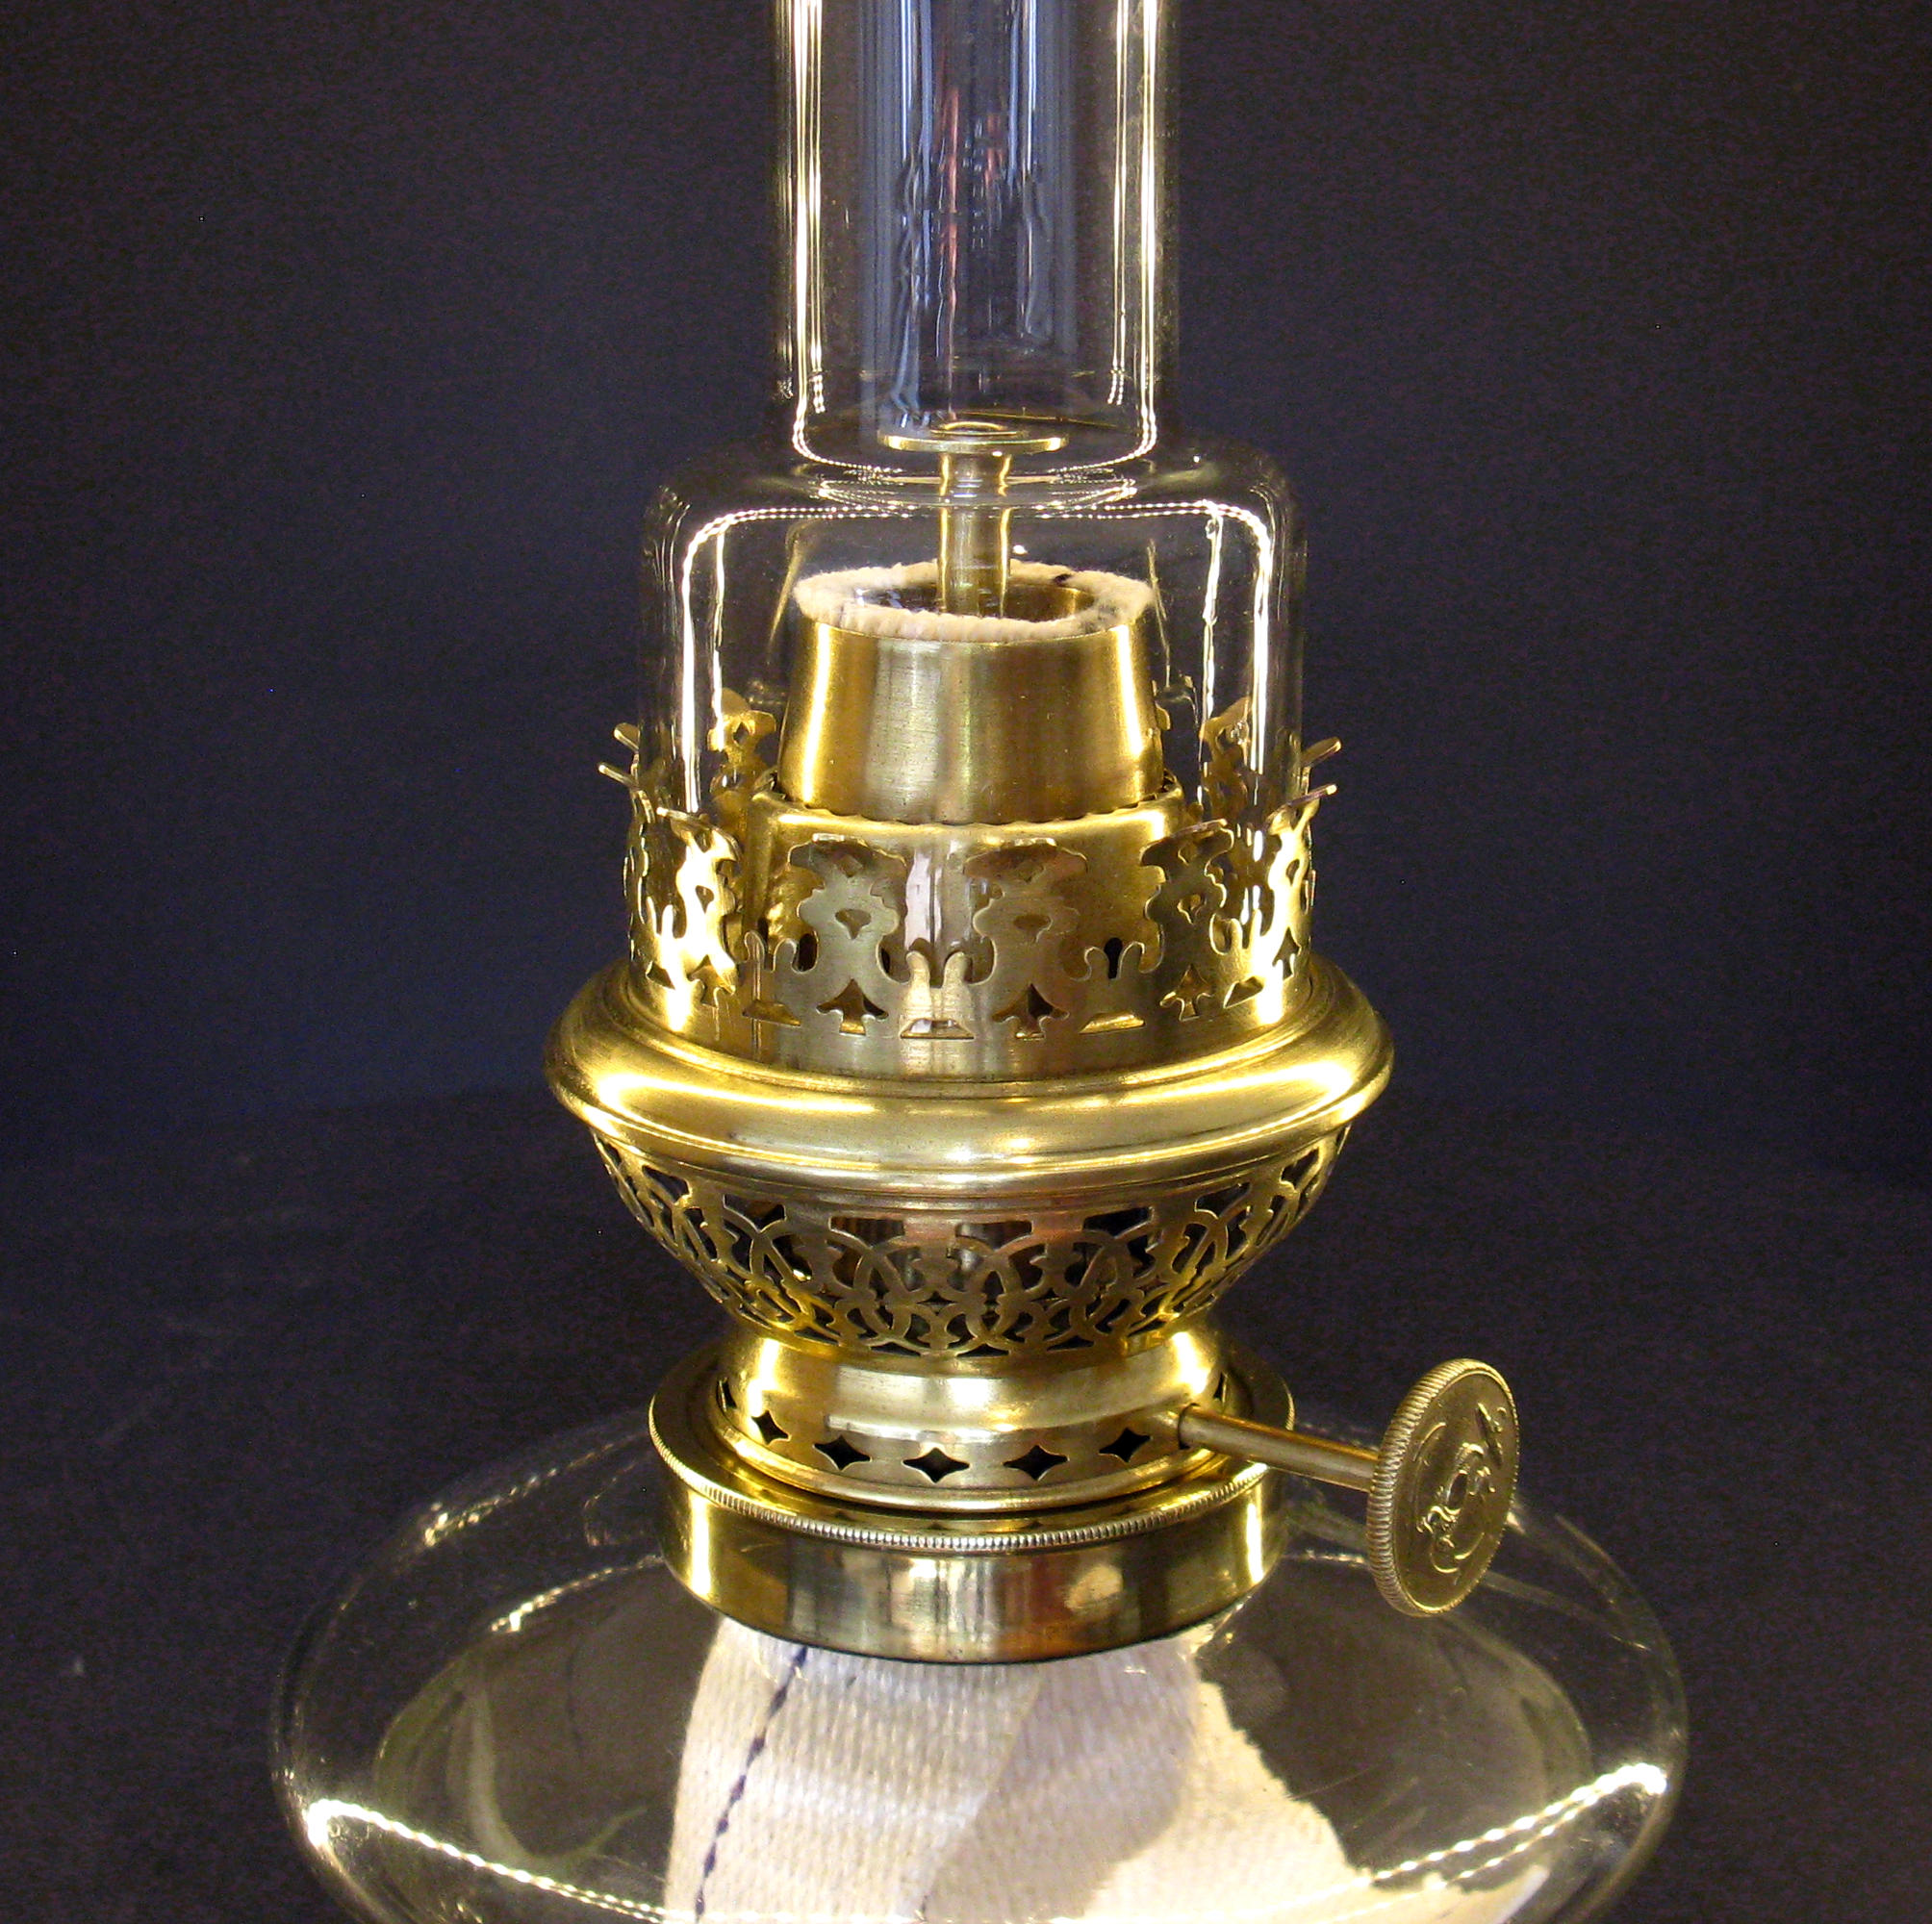 Petroleumbrenner - Kerosene lamp burners